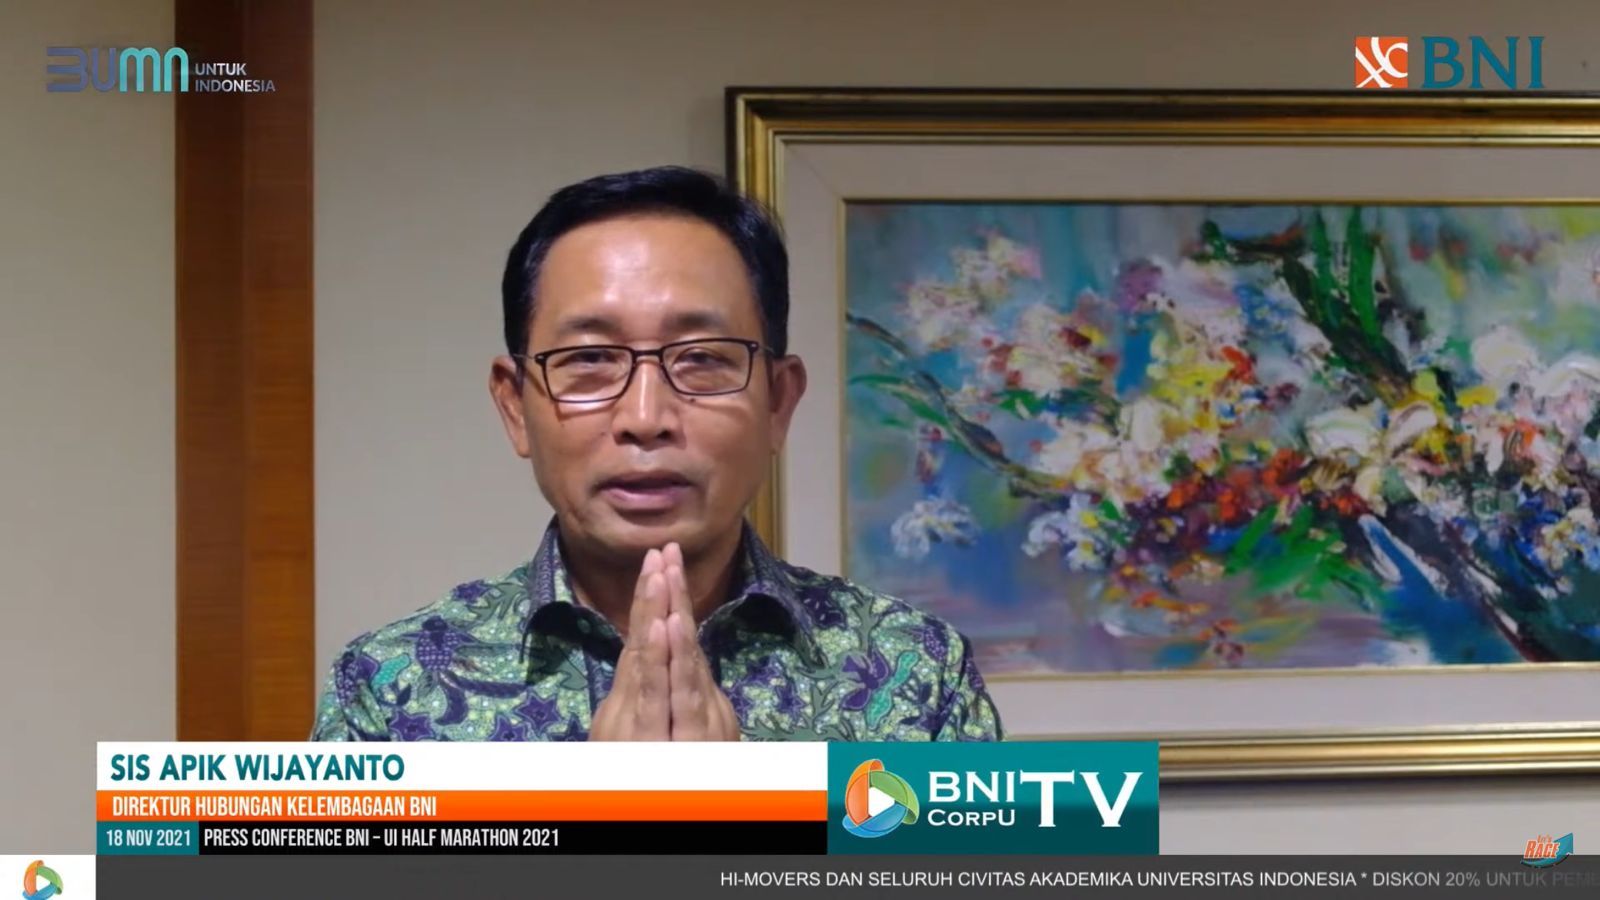 Sis Apik Wijayanto Direktur Kelembagaan BNI menyampaikan, “BNI telah berada di kampus-kampus di Indonesia ini sejak tahun 60-an sehingga sering disebut juga sebagai Bank Kampus. 